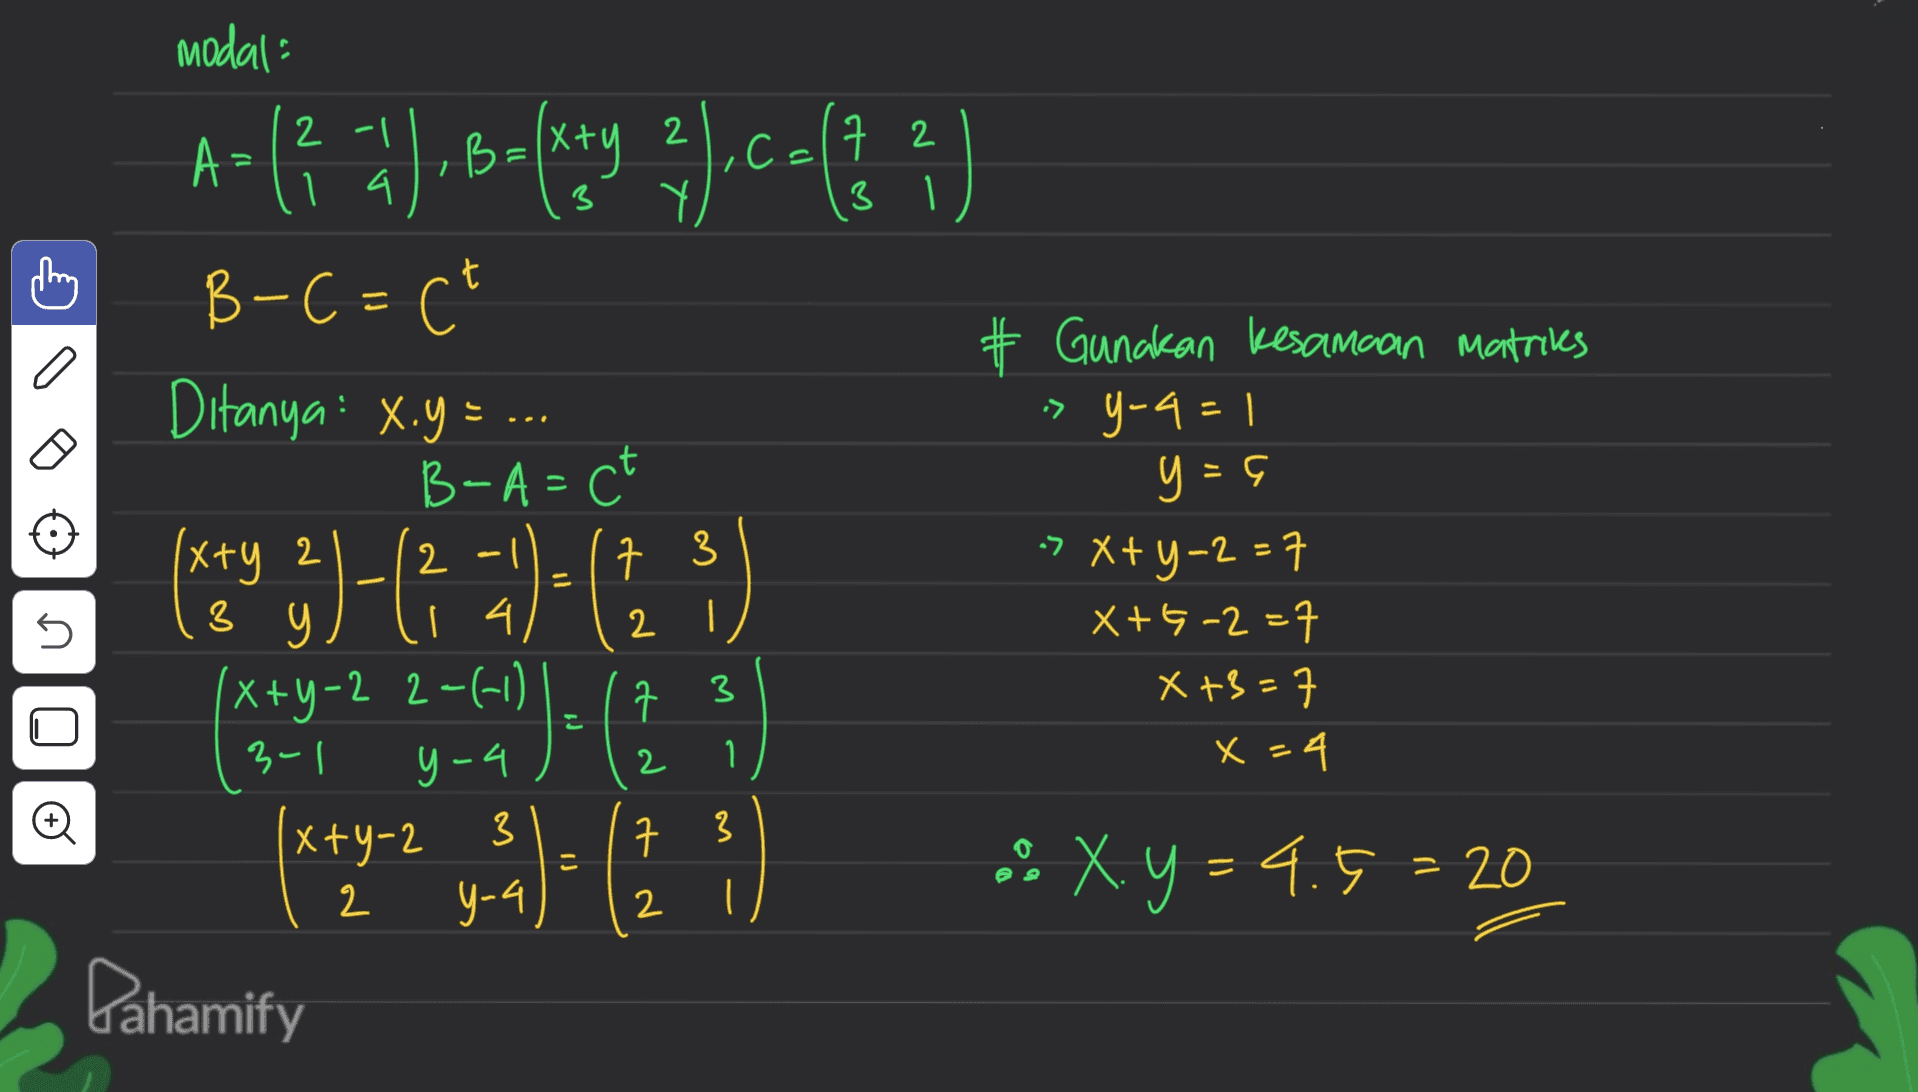 modal A>(3 ay balitang 3).ca() B-C=C² # Gunakan kesamaan matrices => Y-4 = 1 y = 5 7 3 5 2 Ditanya: X.y=.. B-A= ct xxy 2 3 з 9 14 (x+y-2 2-(1) ' ㅋ 구 31 x+y-2 3 구 y-4 Dahamify > x+y=2=7 X+5-2=7 X +3=7 x=4 3 y-4 2 1 1. O 3 こ .. X.y = 4.5 = 20 2 2 